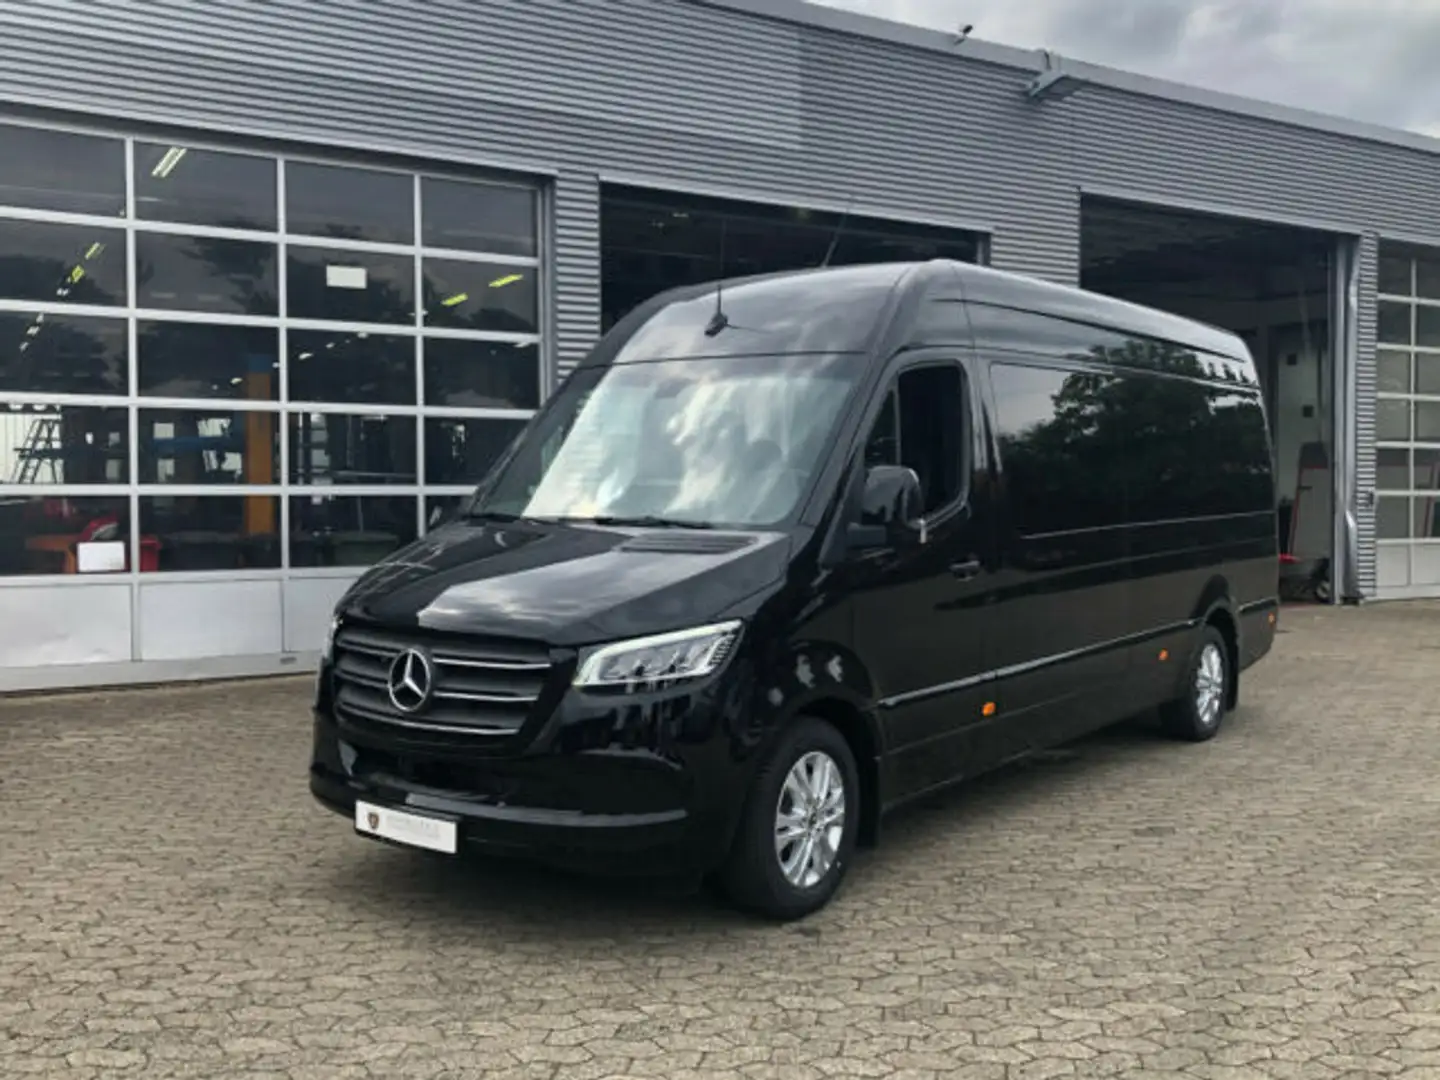 Mercedes-Benz Sprinter Van/Kleinbus in Schwarz neu in Nordstemmen für €  125.500,-